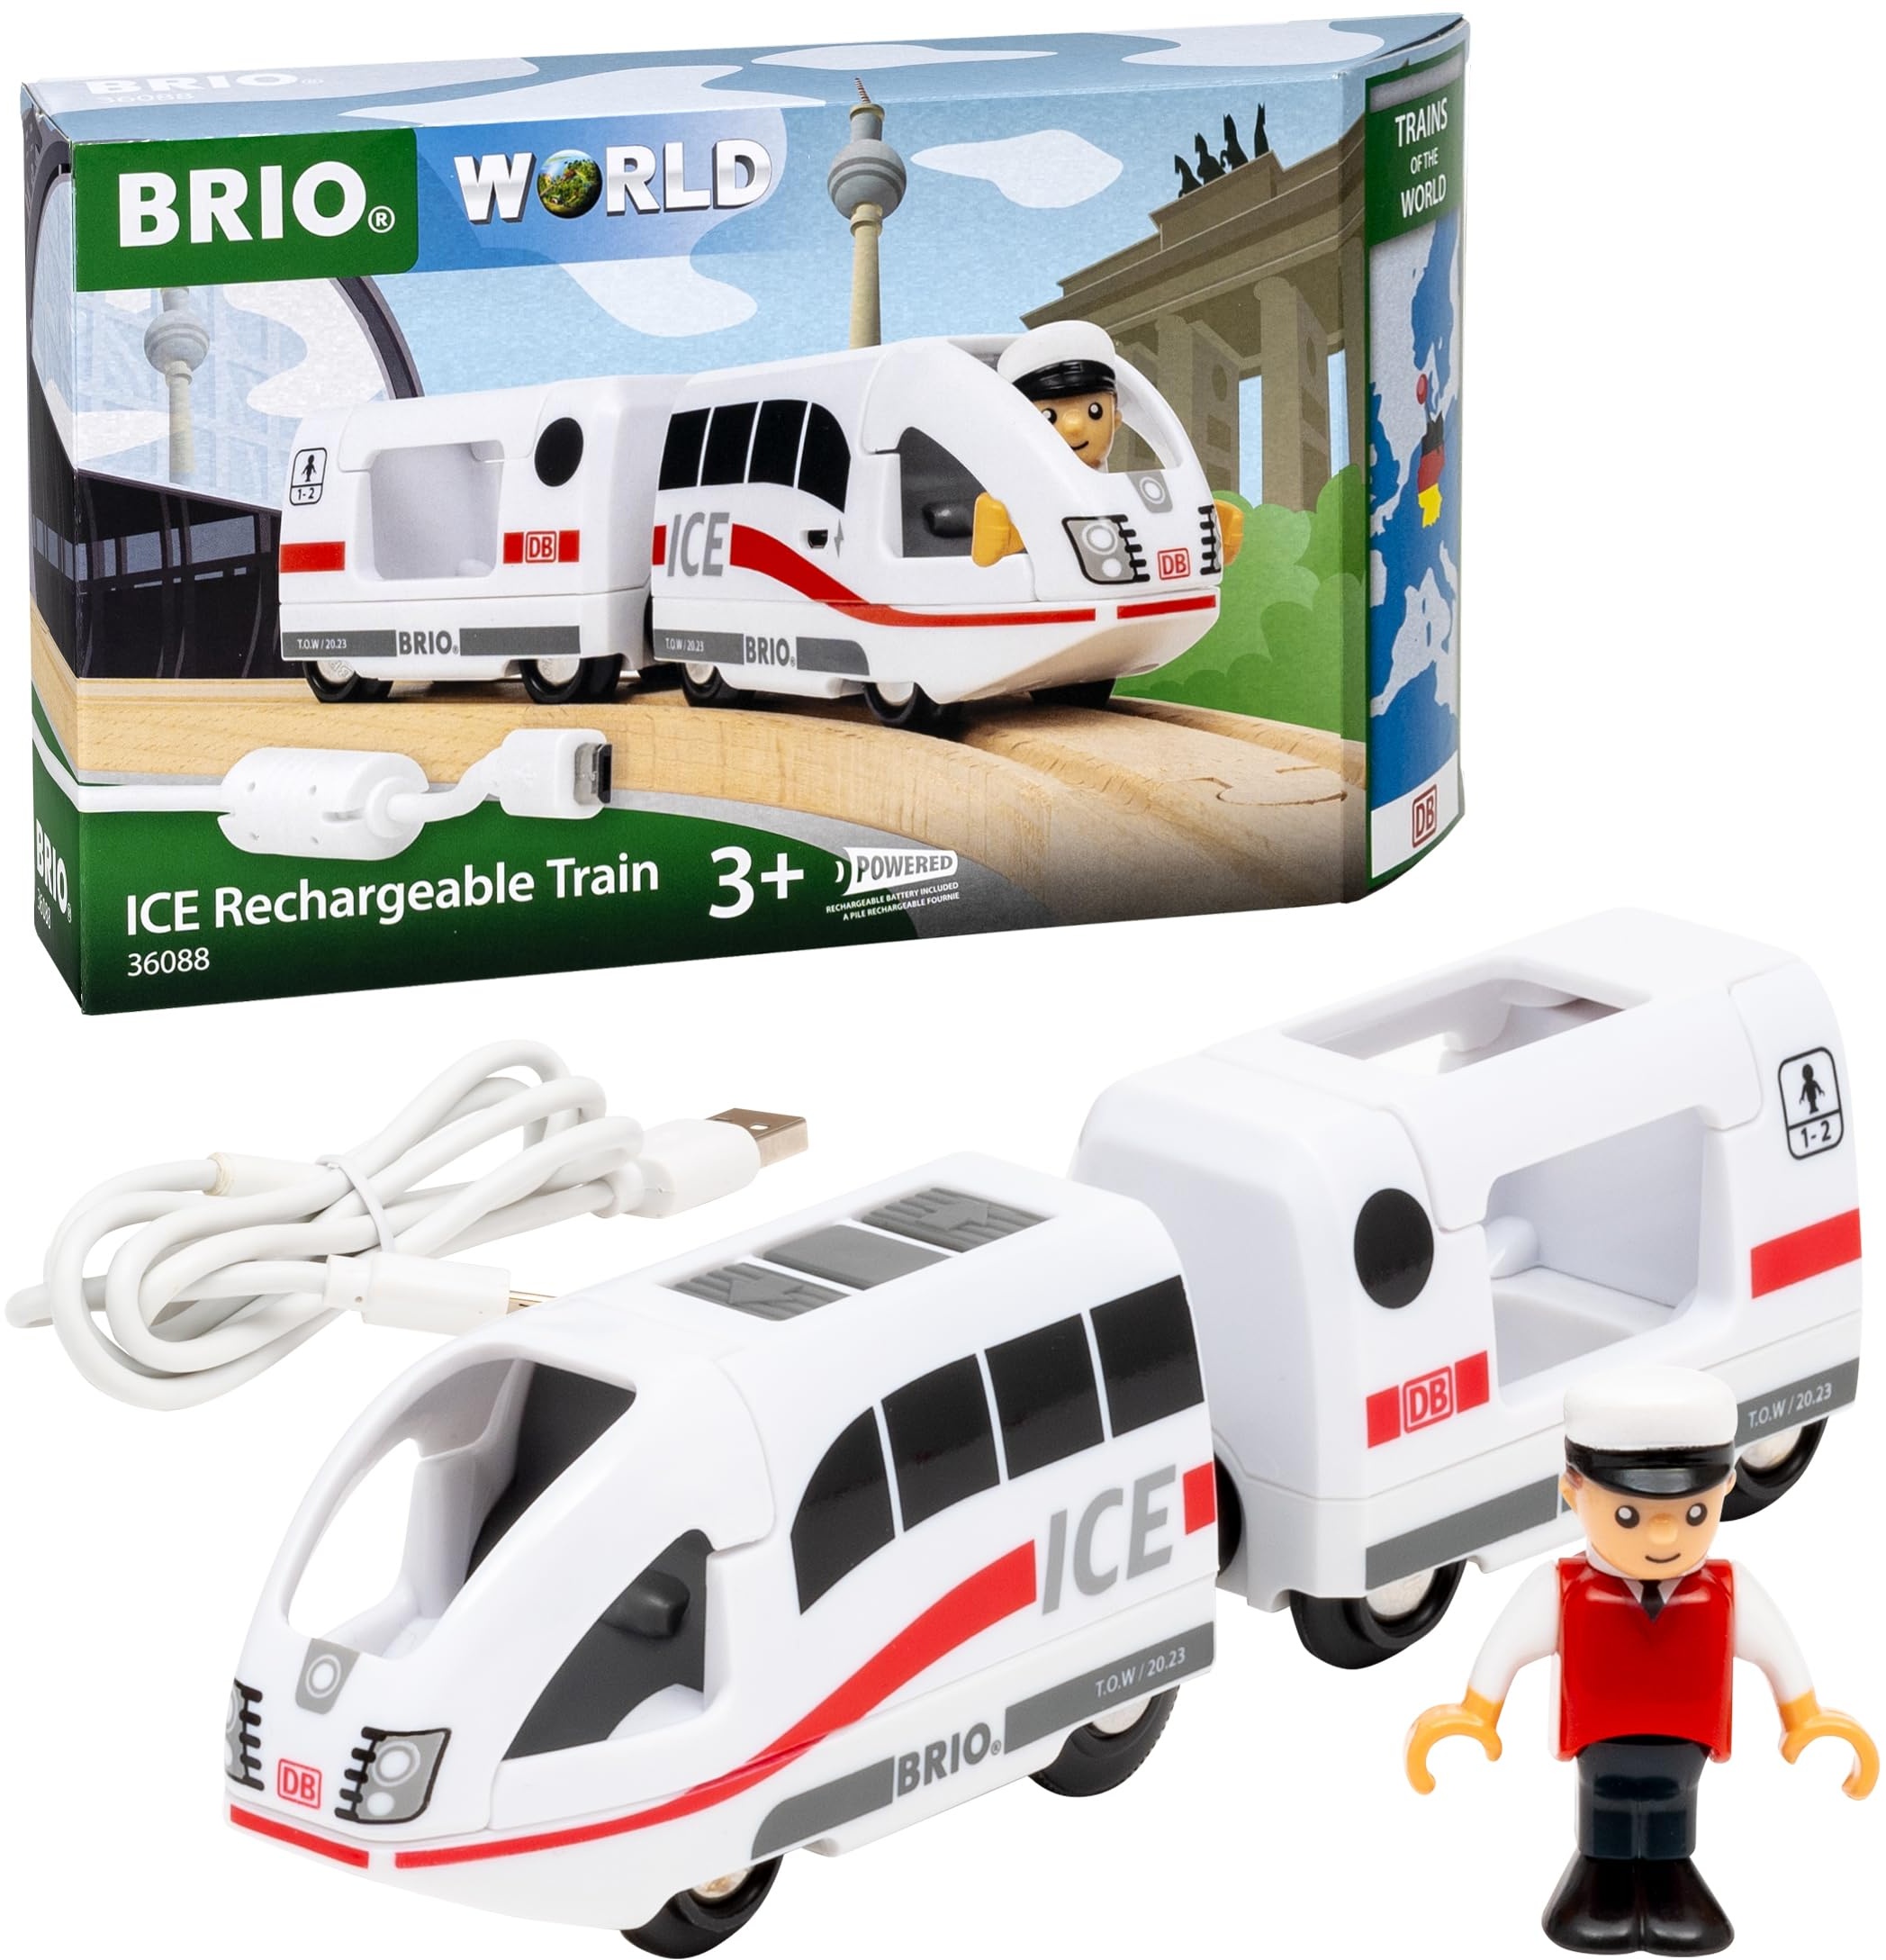 BRIO World 36088 - Trains of The World Ice Akkureisezug - Akku-betriebene Spielzeuglok für Kinder ab 3 Jahren